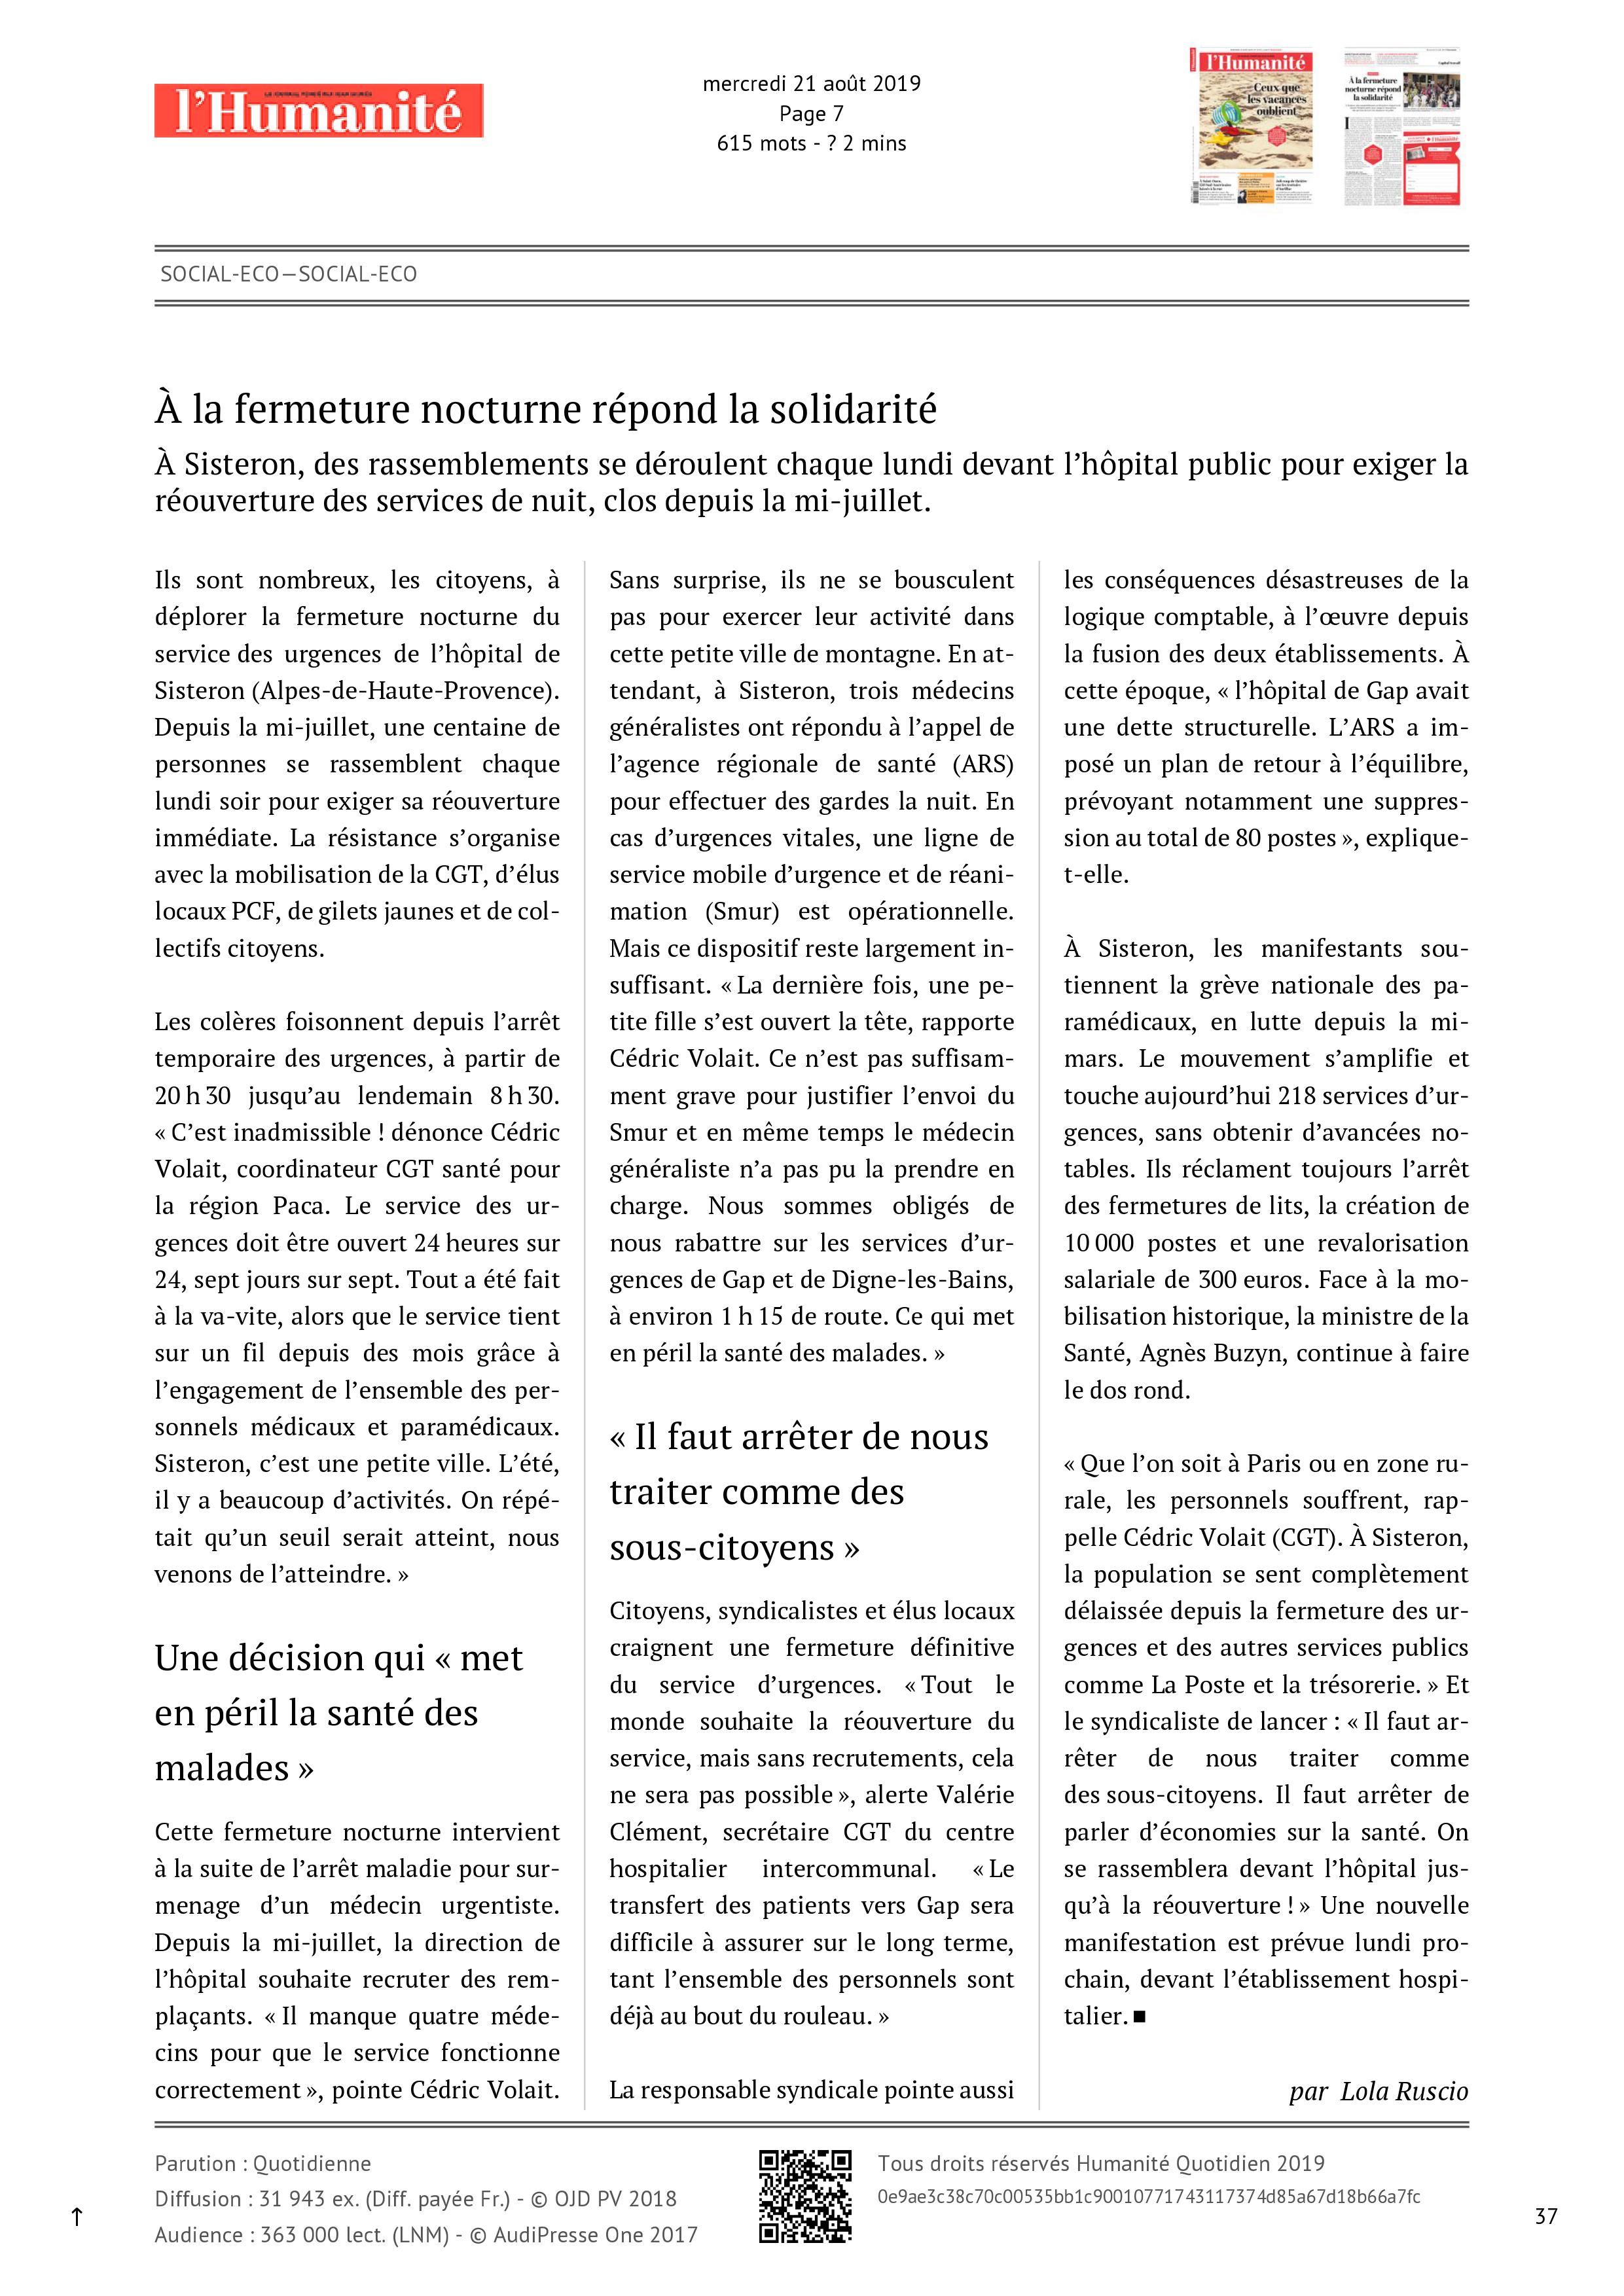 1157. Article L'Humanité du 21 août 2019 Urgences de Sisteron